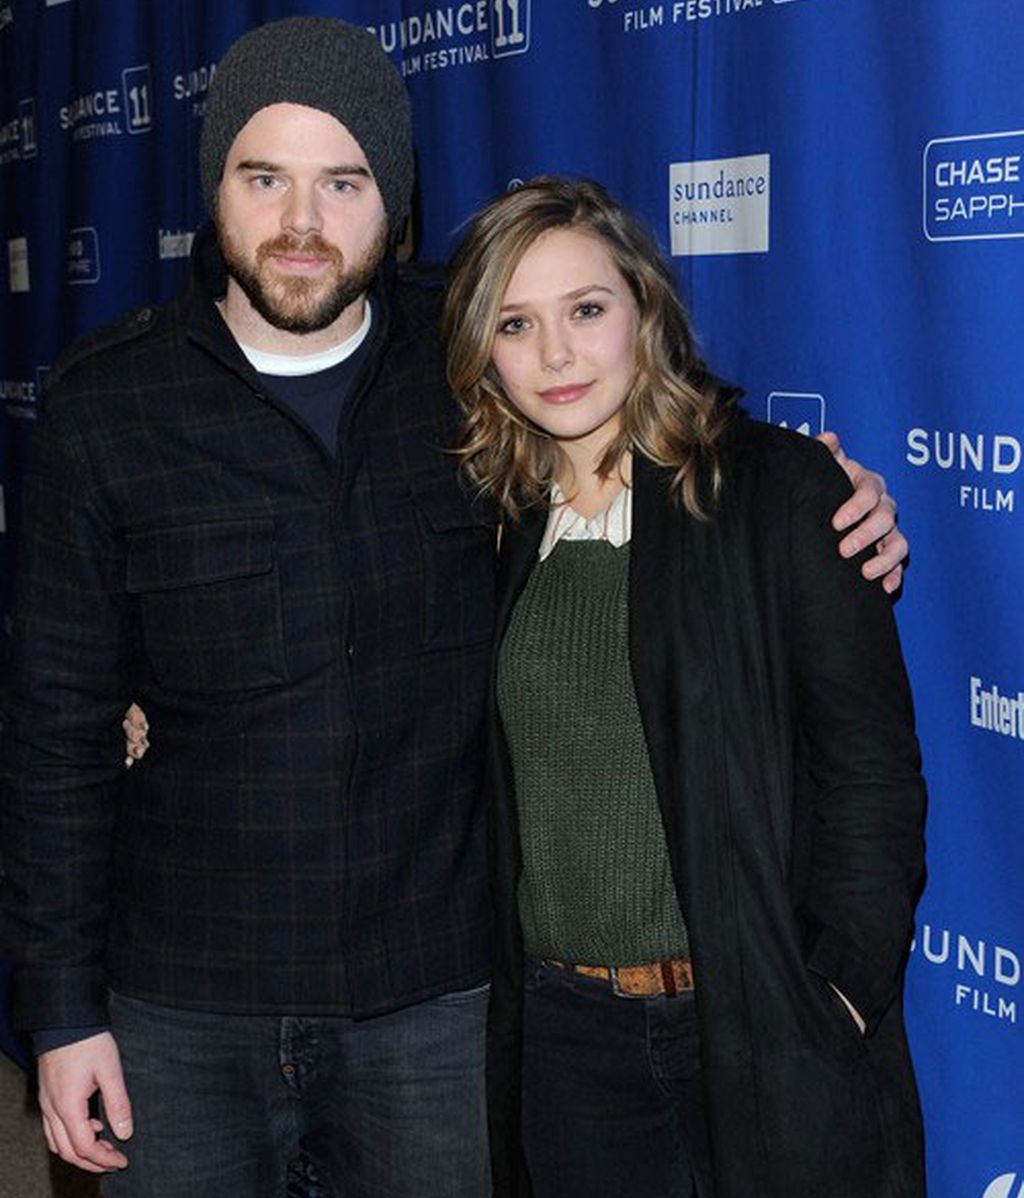 La hermana indie de las Olsen acude a Sundance